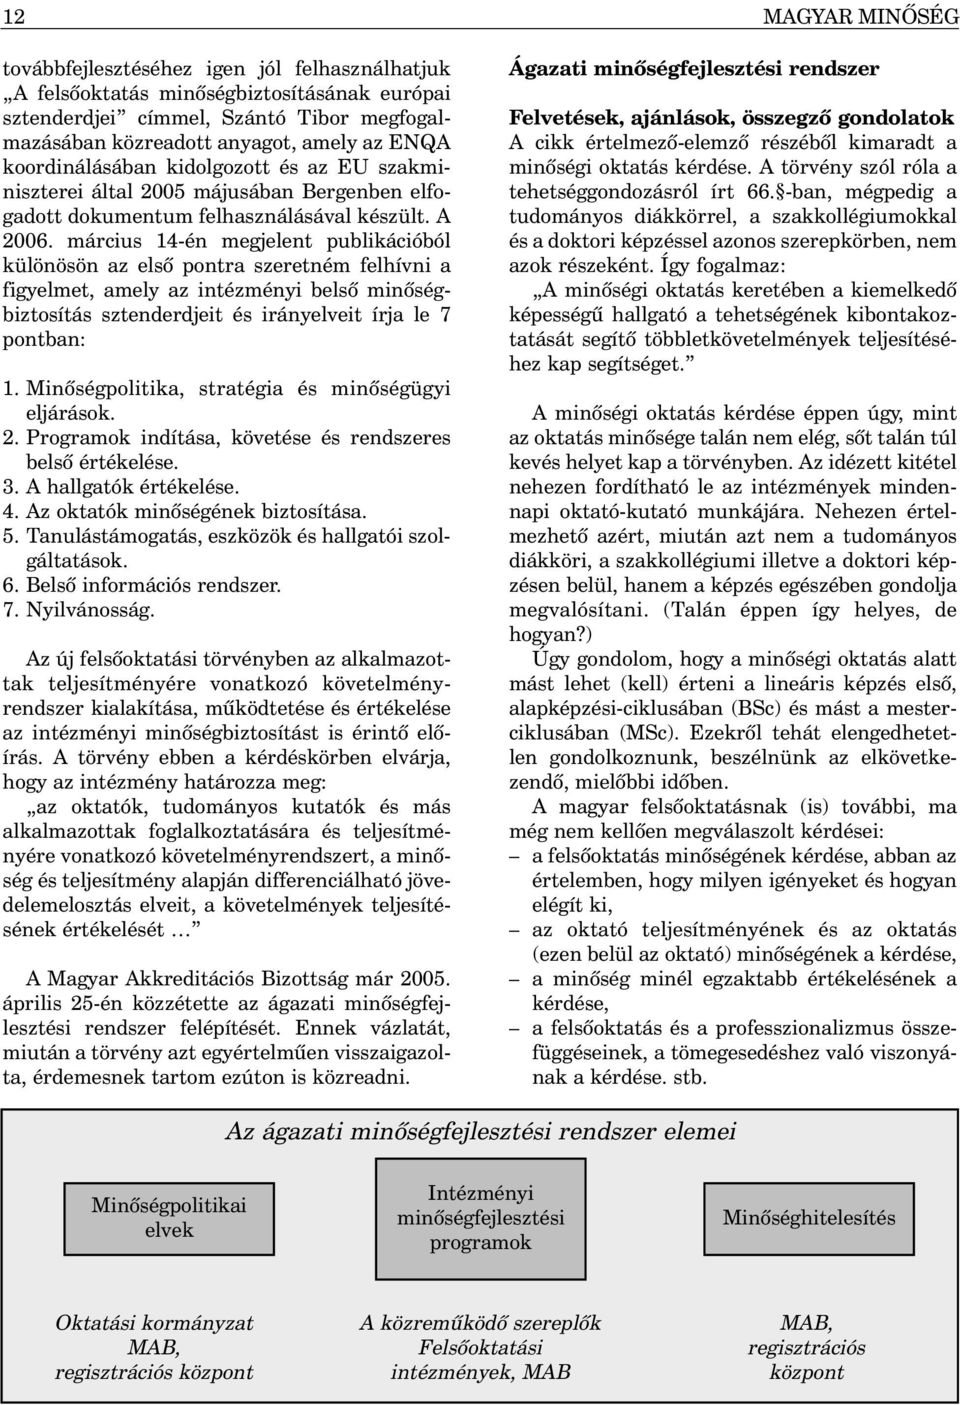 március 14-én megjelent publikációból különösön az elsõ pontra szeretném felhívni a figyelmet, amely az intézményi belsõ minõségbiztosítás sztenderdjeit és irányelveit írja le 7 pontban: 1.